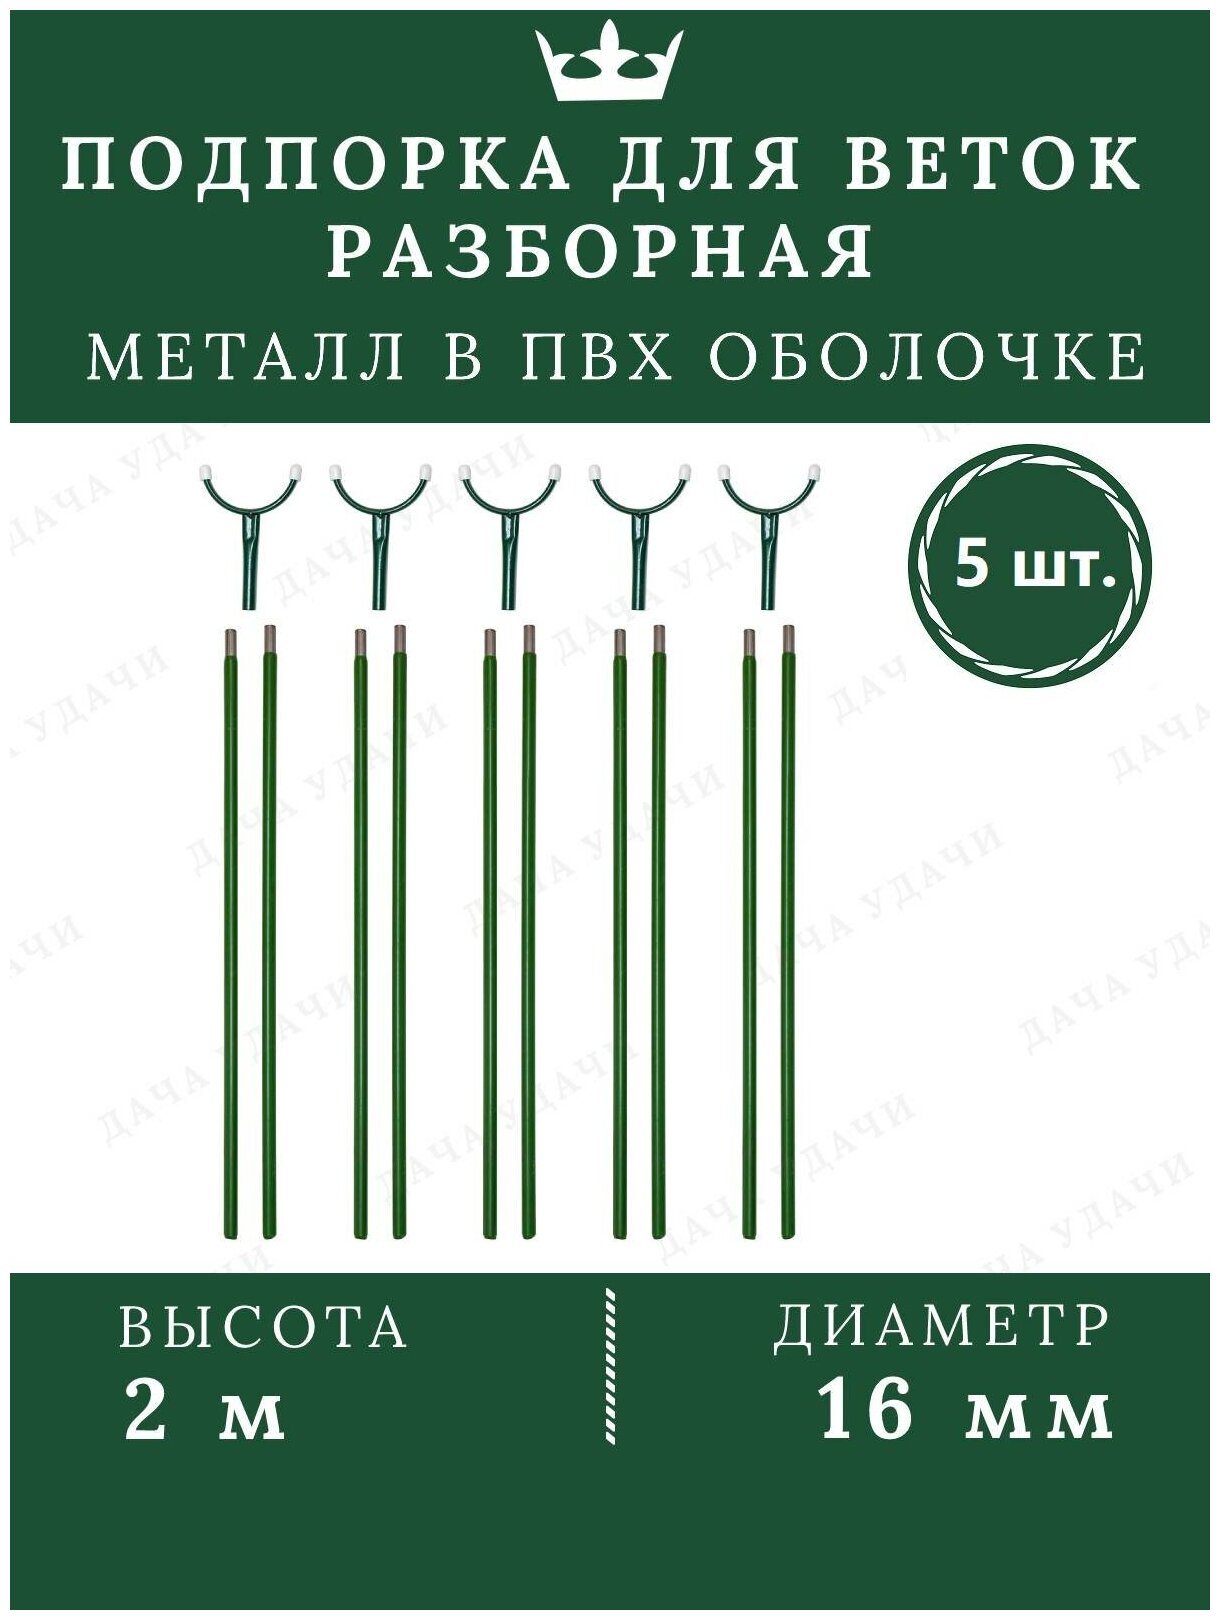 Подпорка для деревьев металл опора для растений садовая 2м 5 шт.